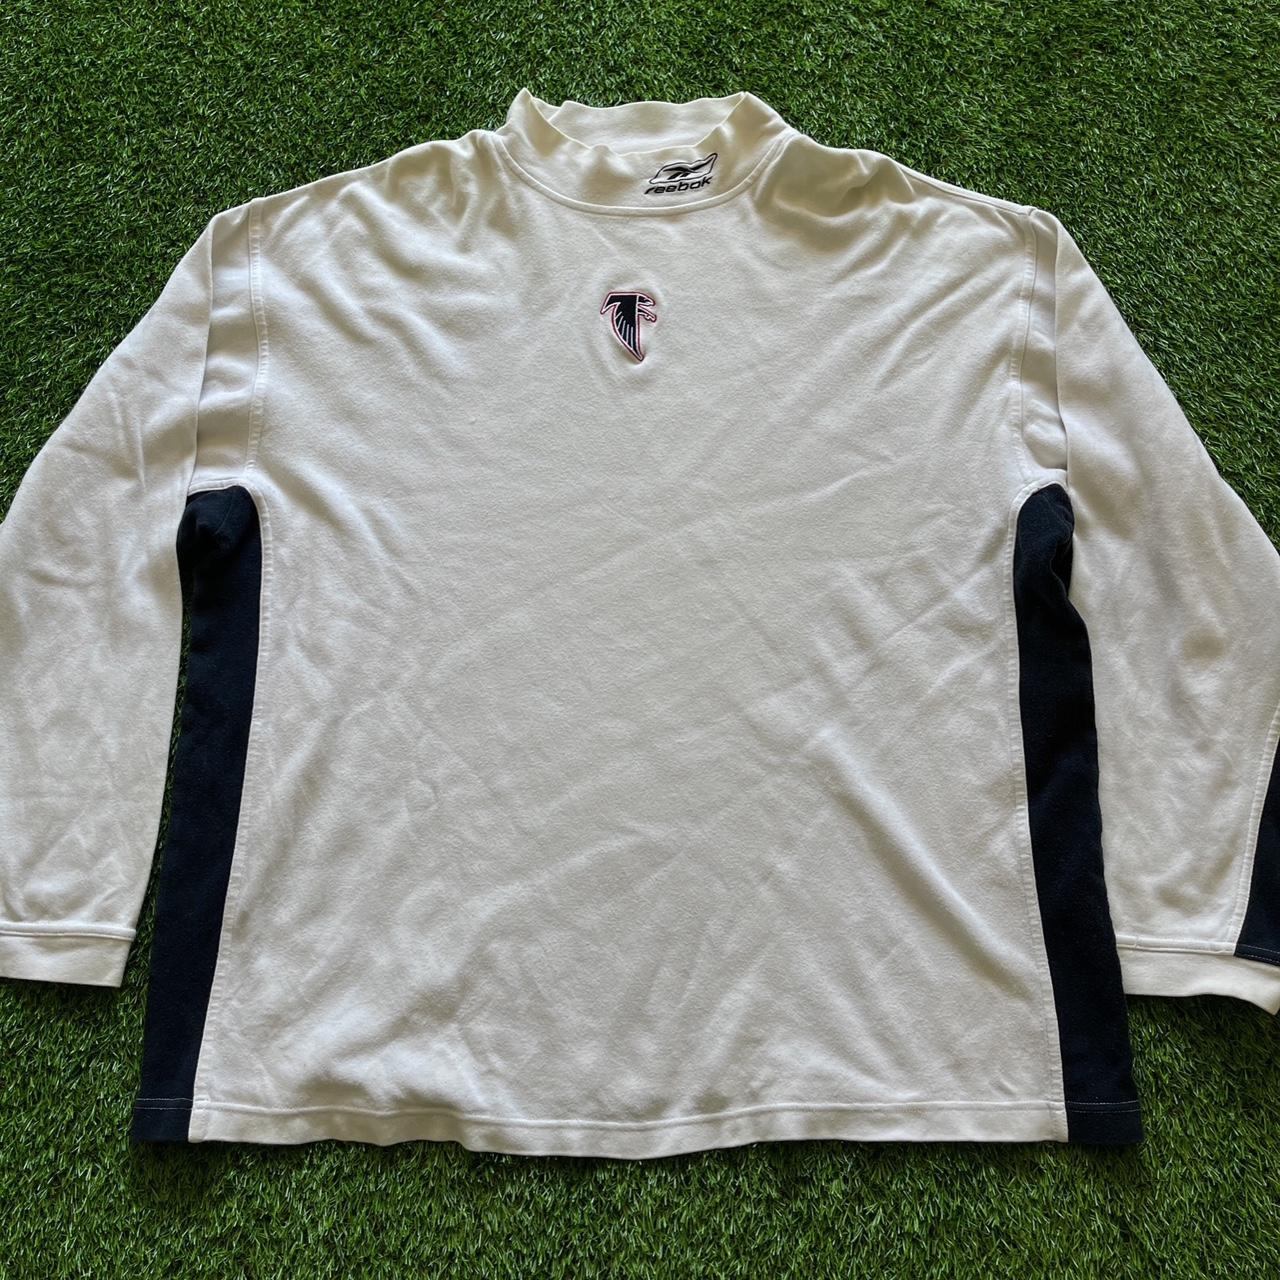 NFL Men's T-Shirt - White - XL